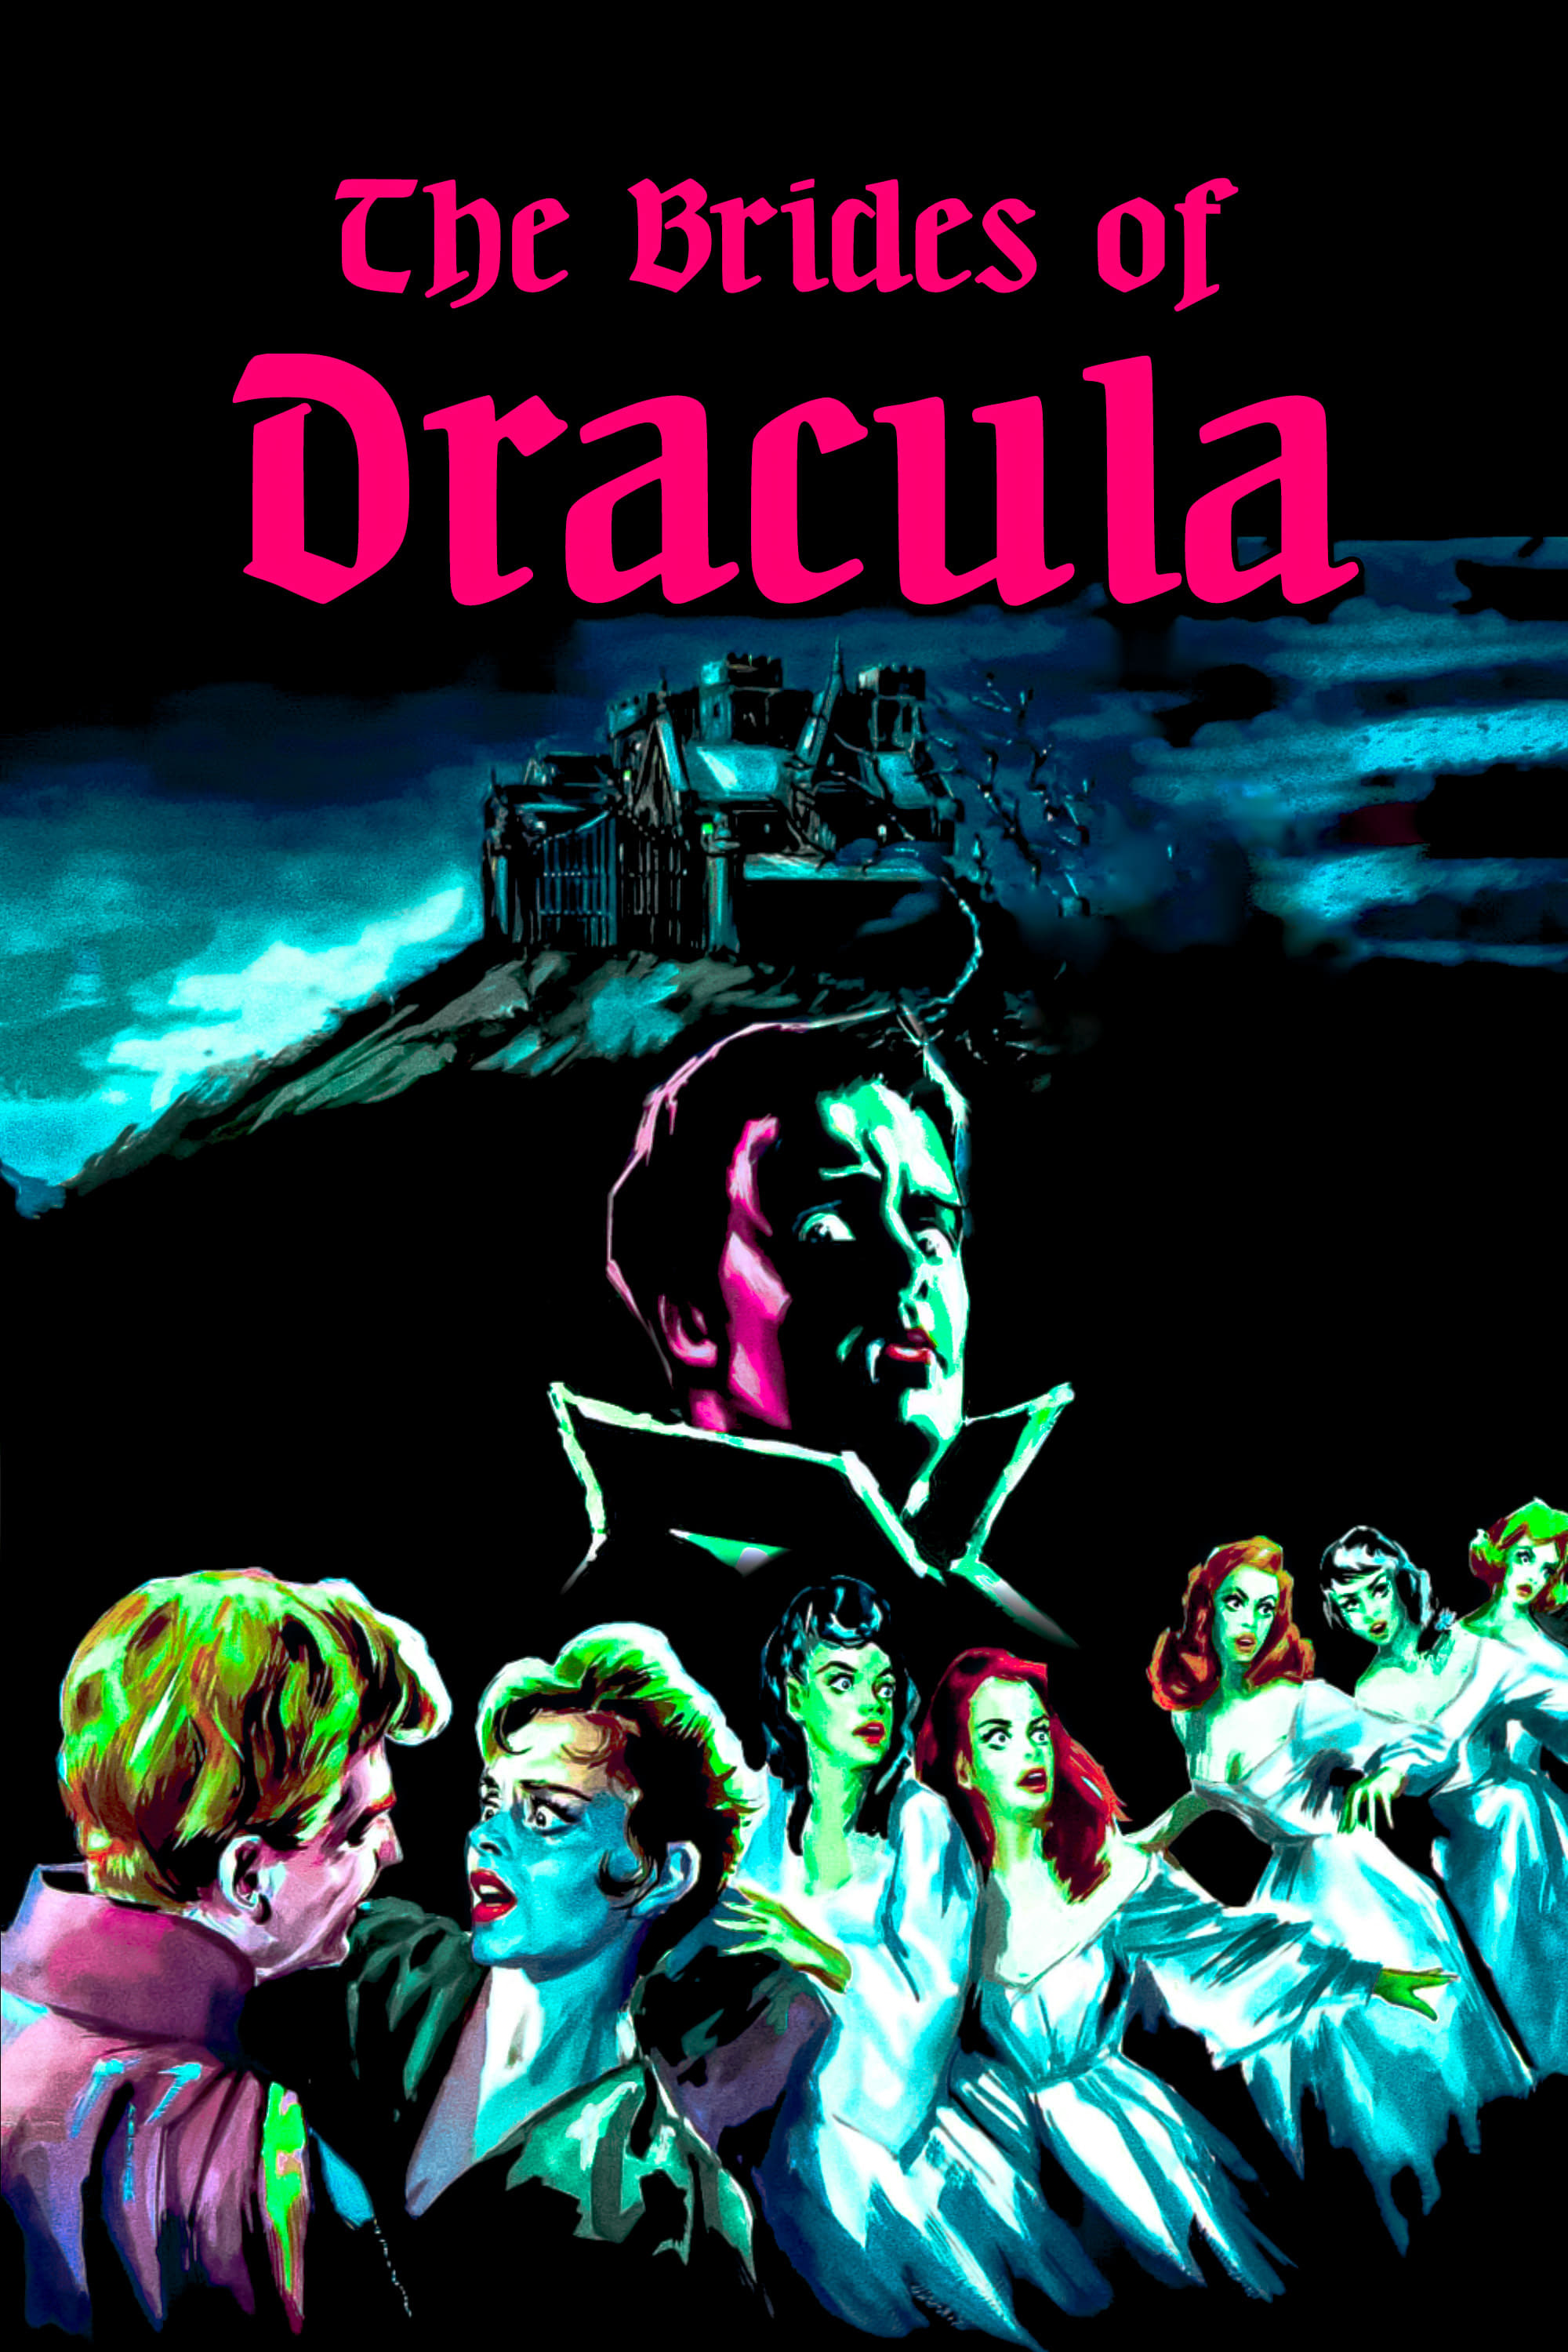 Dracula und seine Bräute